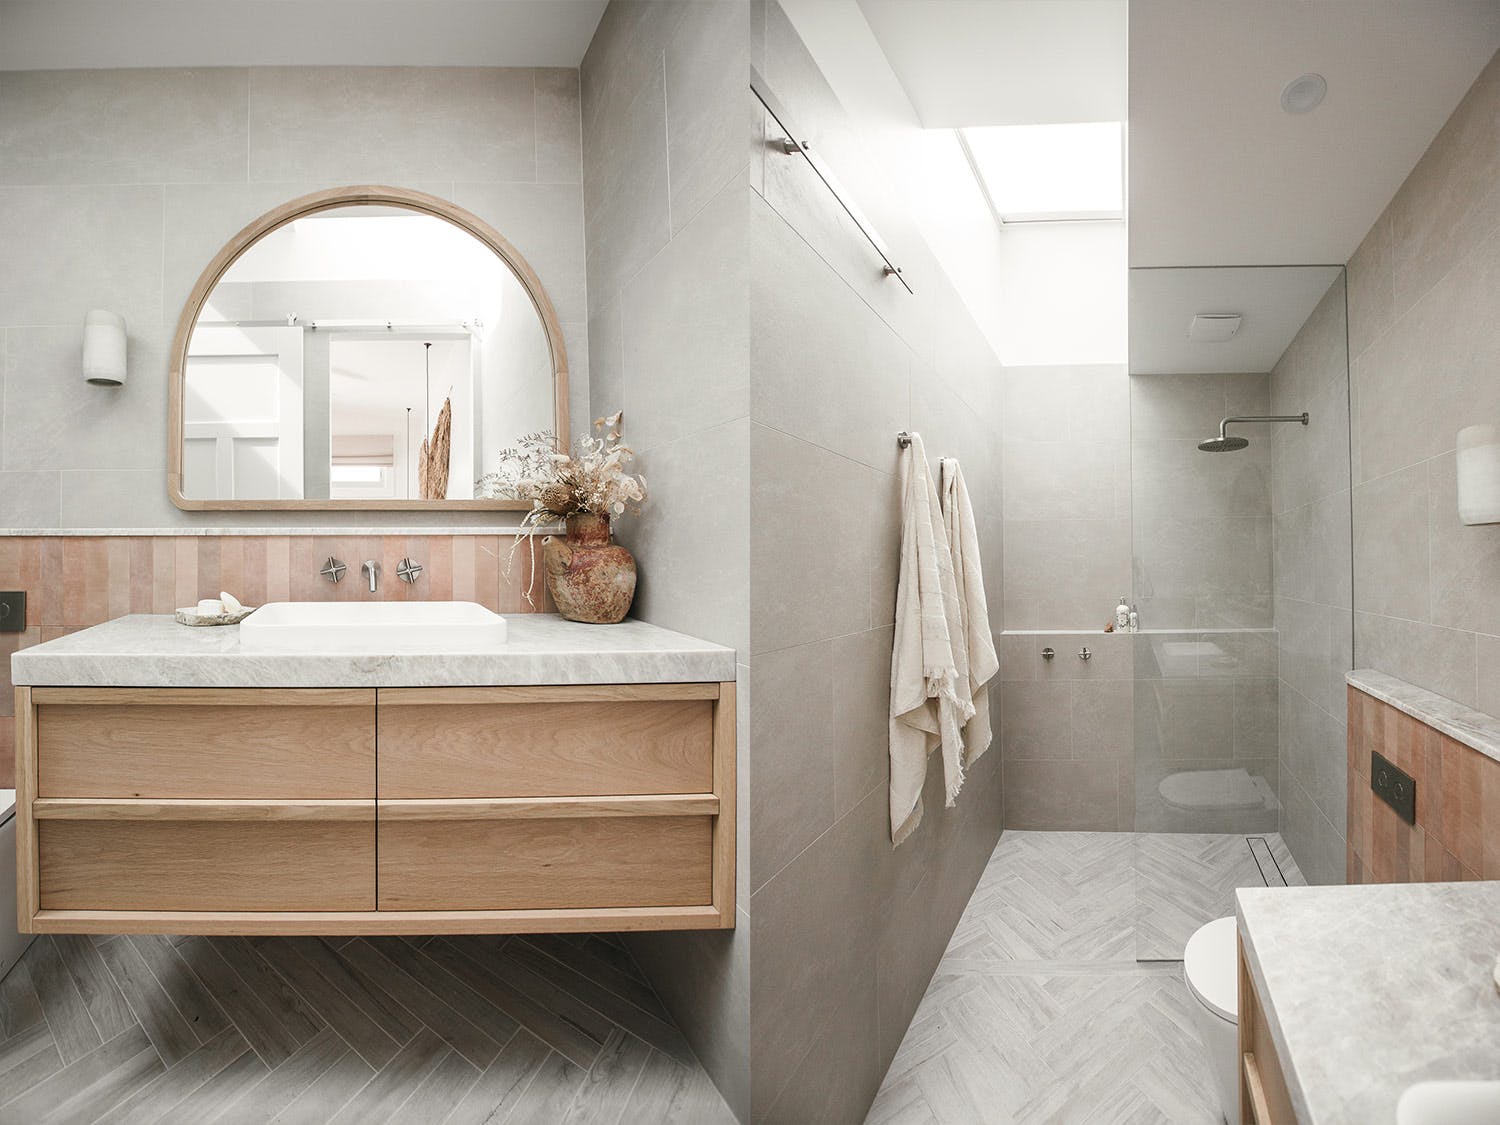 Bathroom design tips from renovation duo, Kyal and Kara - Cosentino ...